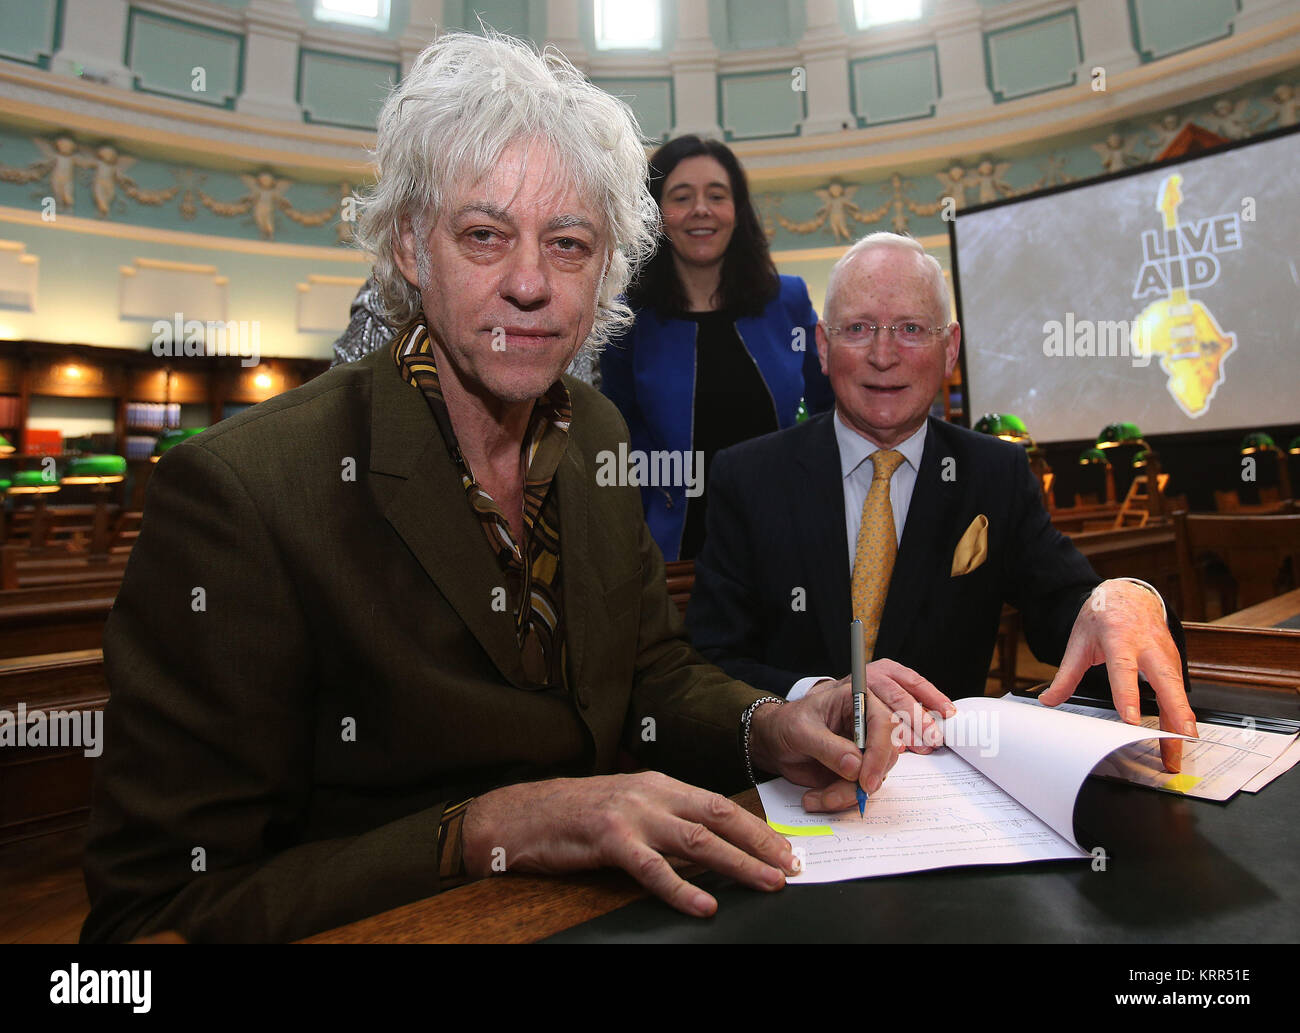 Sir Bob Geldof (à gauche) signe un contrat à la Bibliothèque nationale d'Irlande (INT) à Dublin avec le président Paul Shovlin et directrice de la bibliothèque Dr Sandra Collins, comme il a annoncé que l'aide de bande Trust fait don de ses archives à l'INT. Photo date : mercredi 20 décembre 2017. Voir PA histoire IRISH Geldof. Crédit photo doit se lire : Brian Lawless/PA Wire Banque D'Images